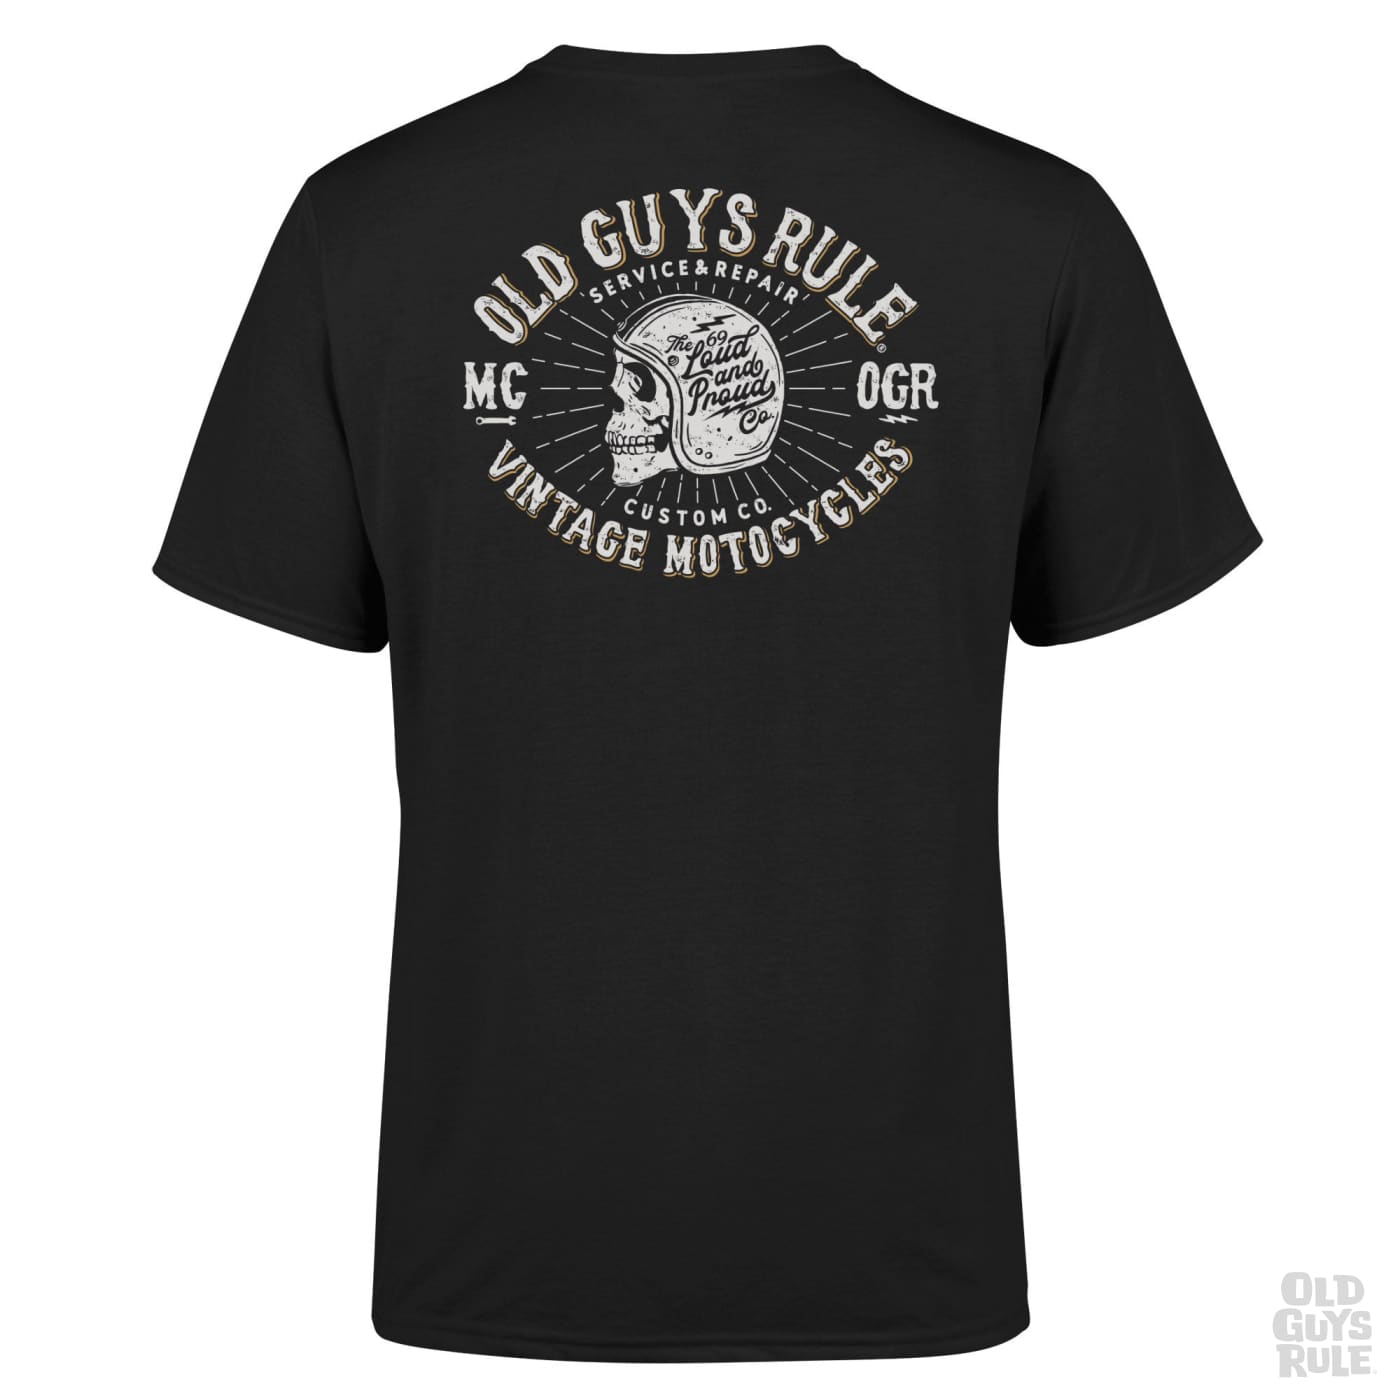 Old Guys Rule Vintage Motorcycles III T-Shirt - Black